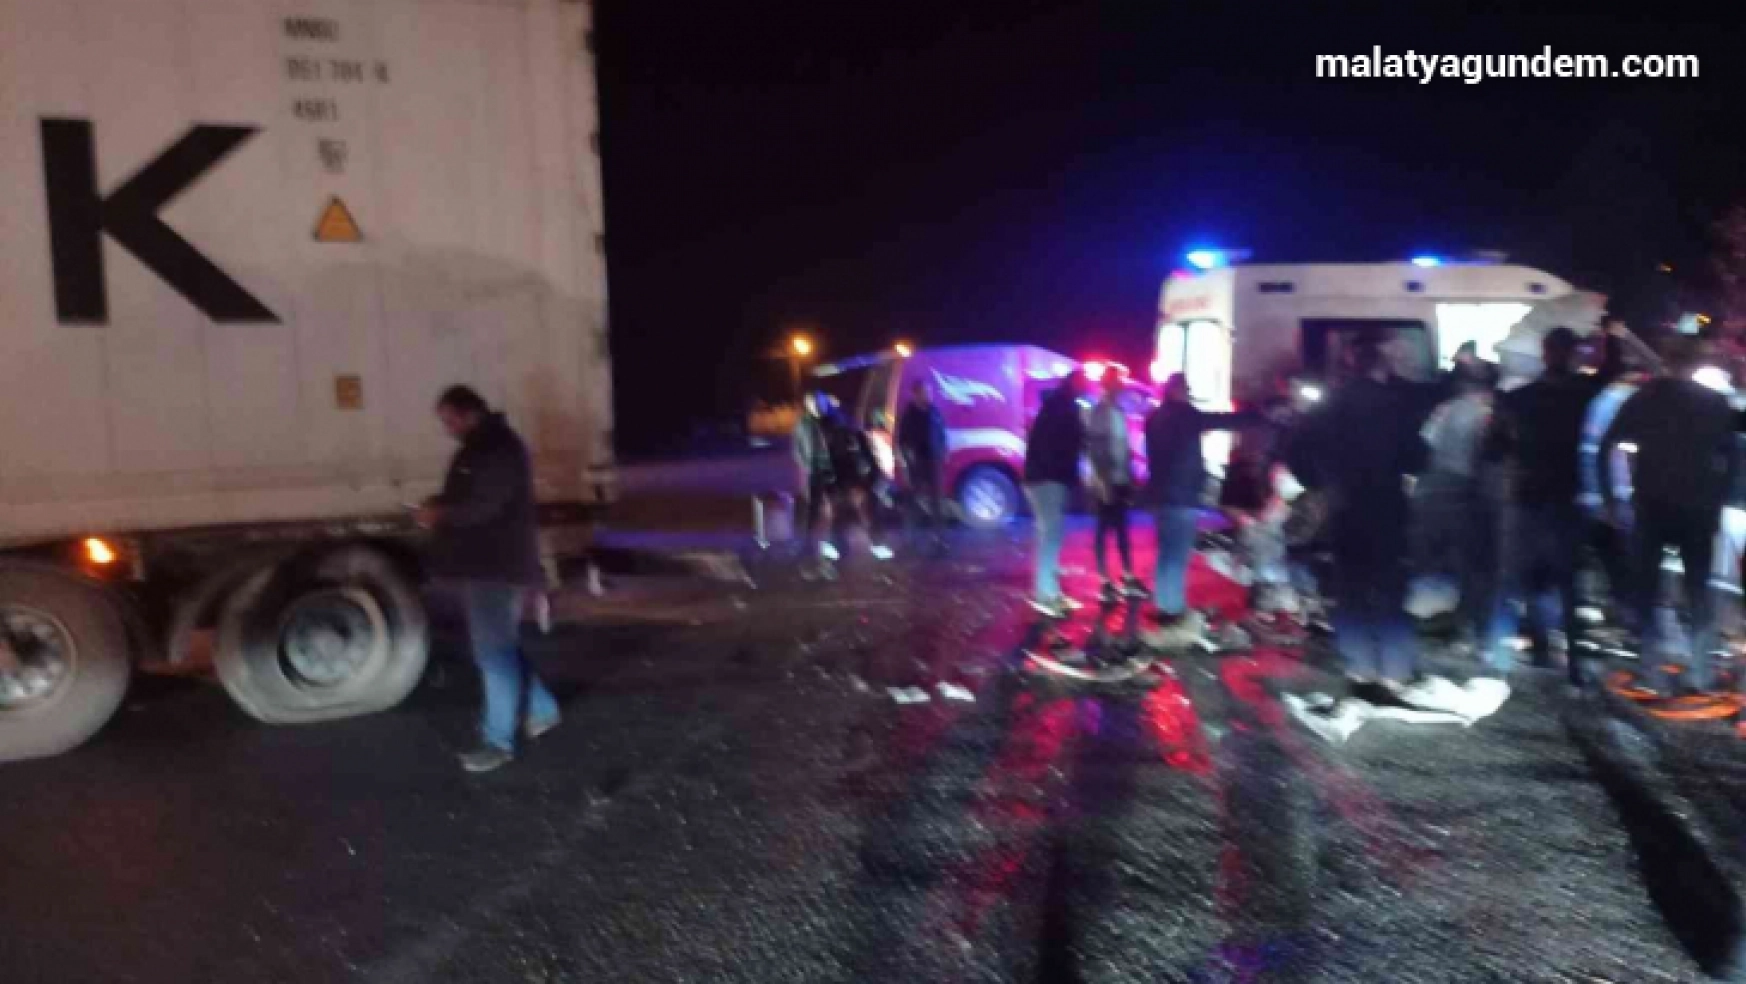 Malatya'daki feci kazada ölü sayısı 2'ye çıktı